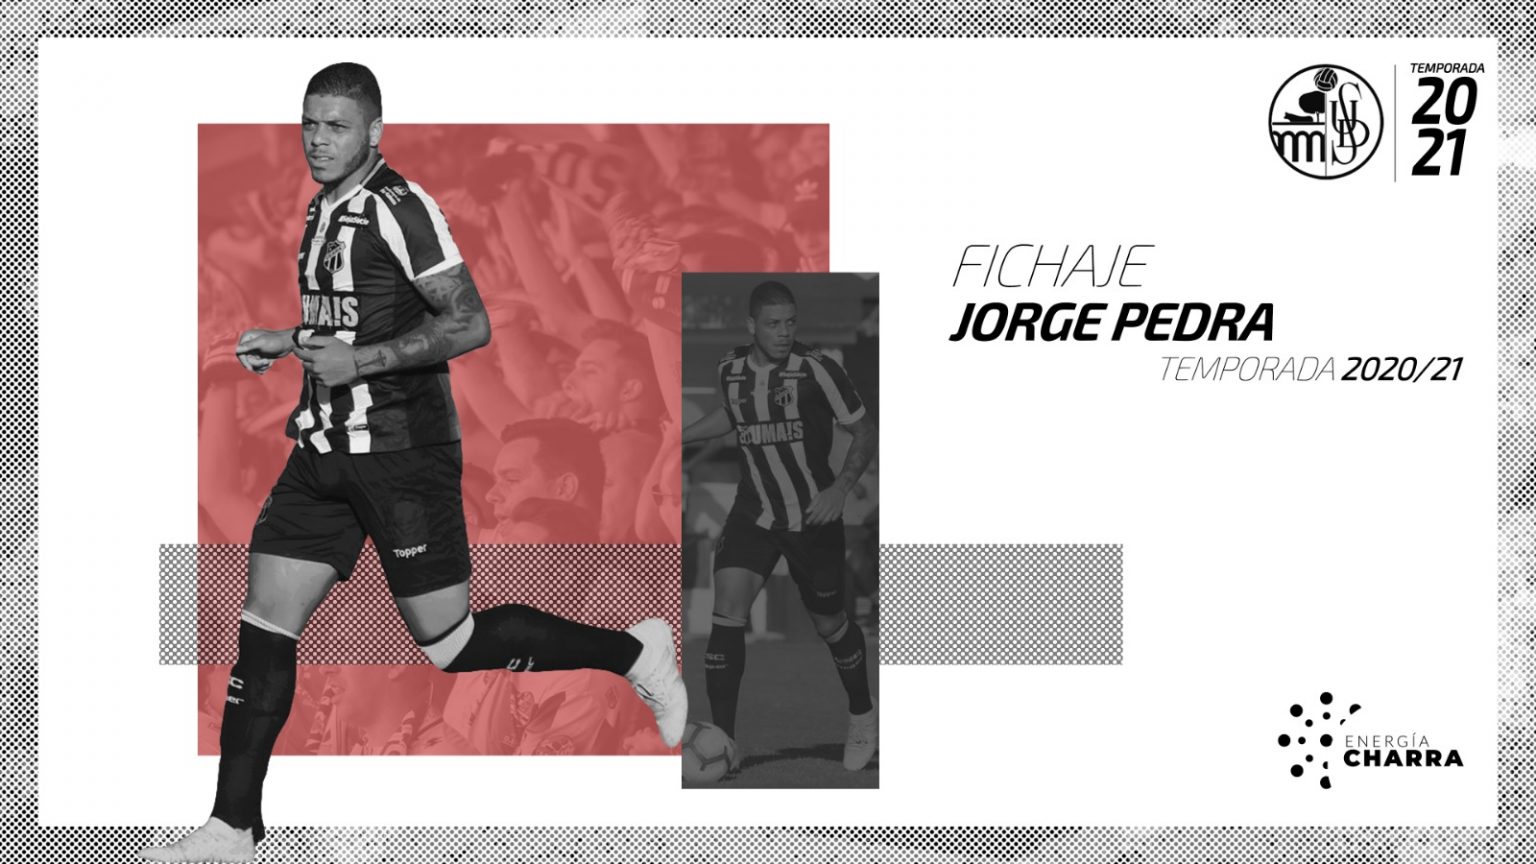 Jorge Pedra